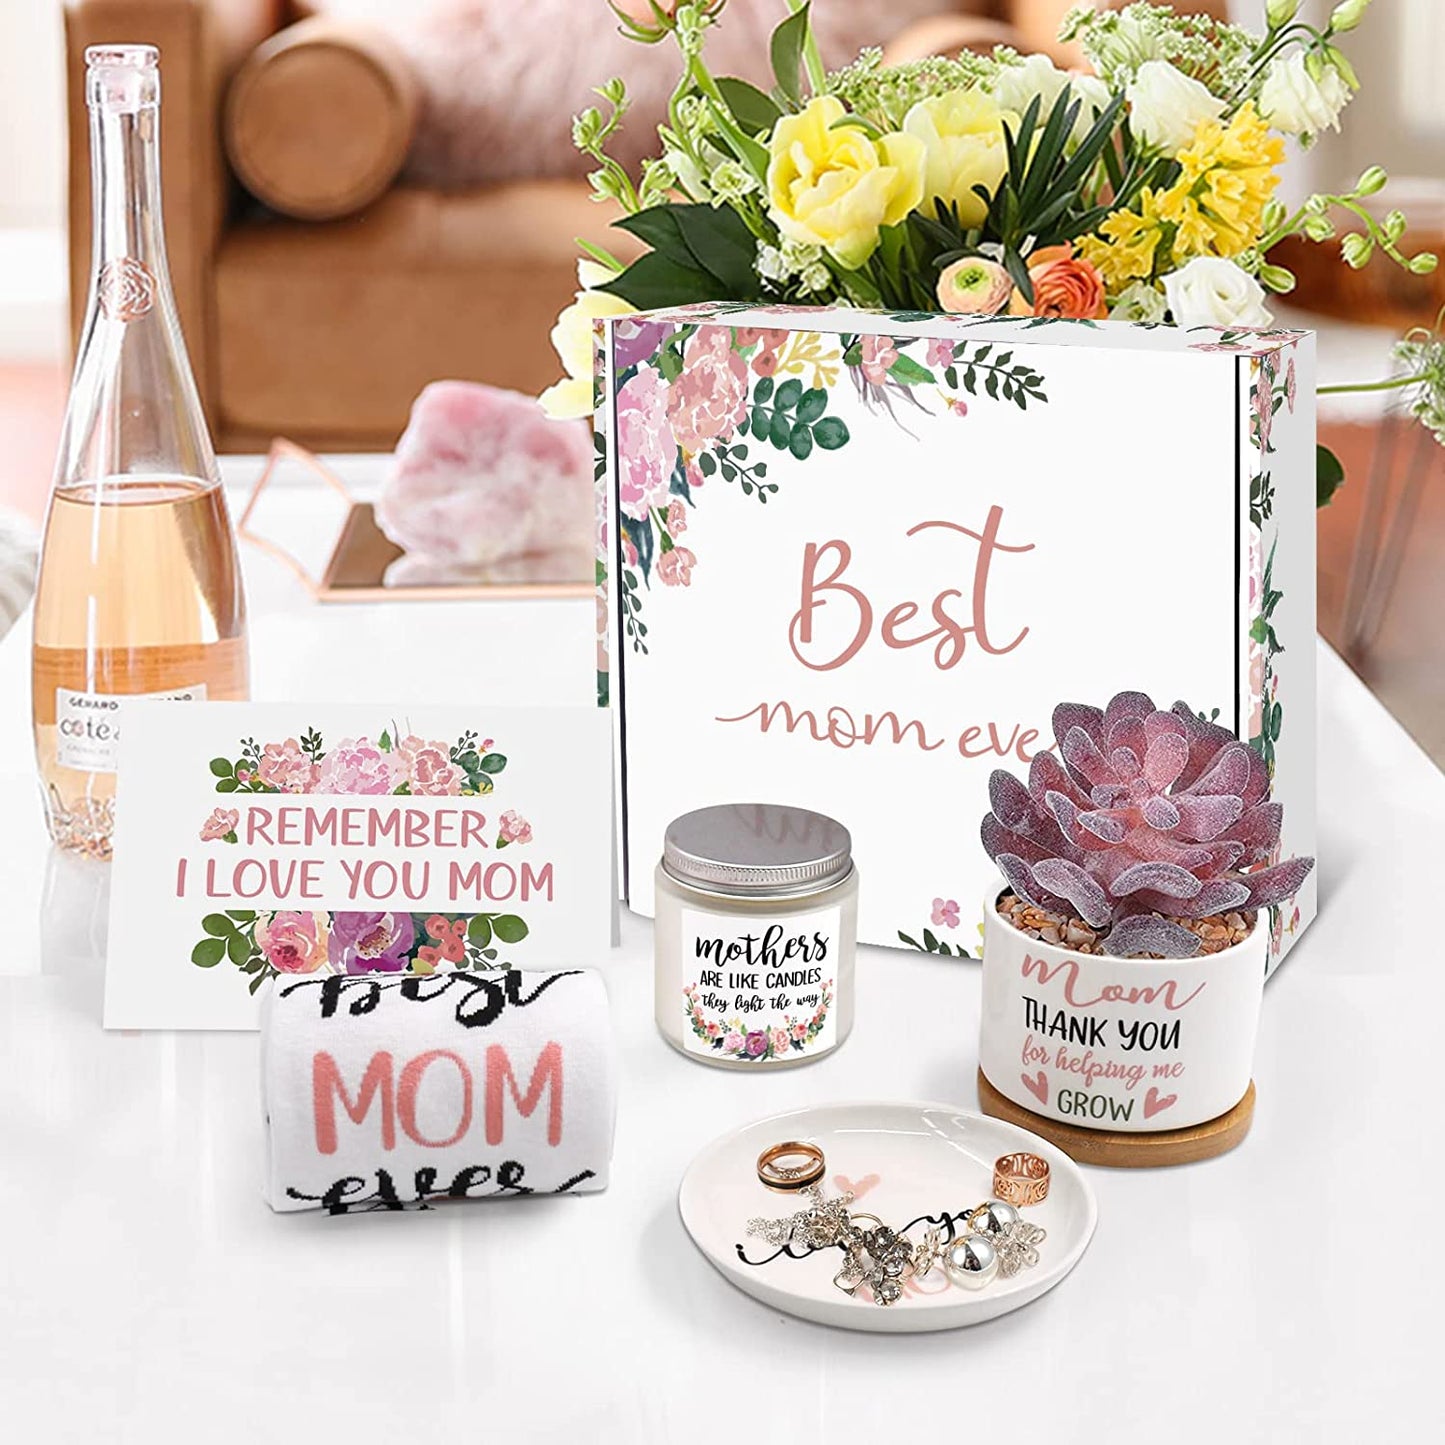 Best Mom Ever Floral Gift Box Set momhomedecor